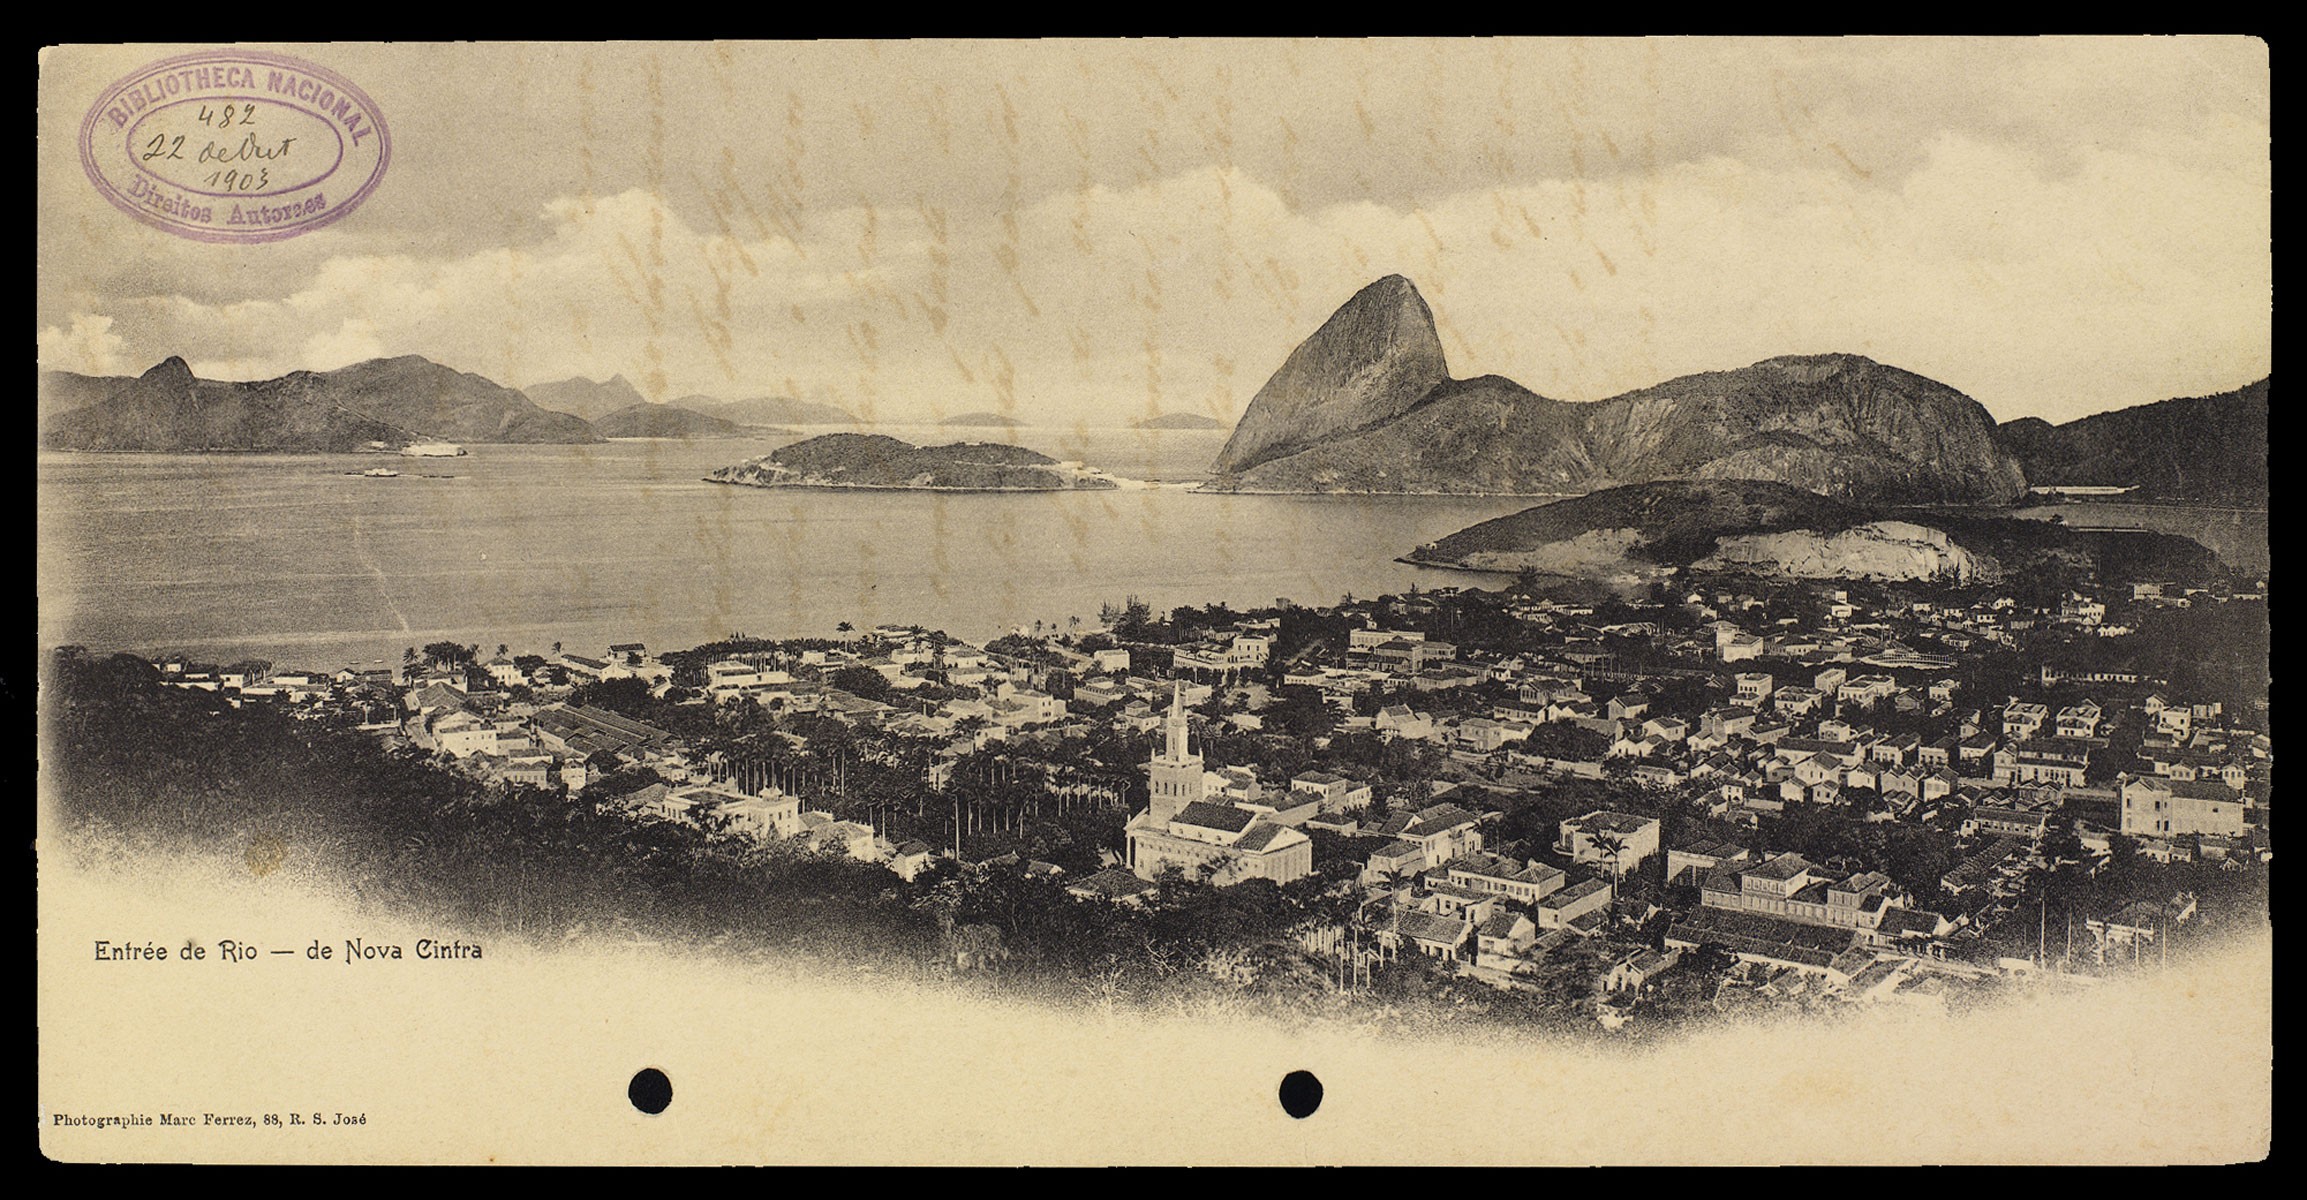 Fotografia de Marc Ferrez. Entrée de Rio: de Nova Cintra, c. 1890. Baía de Guanabara, Rio de Janeiro (Foto: Reprodução)